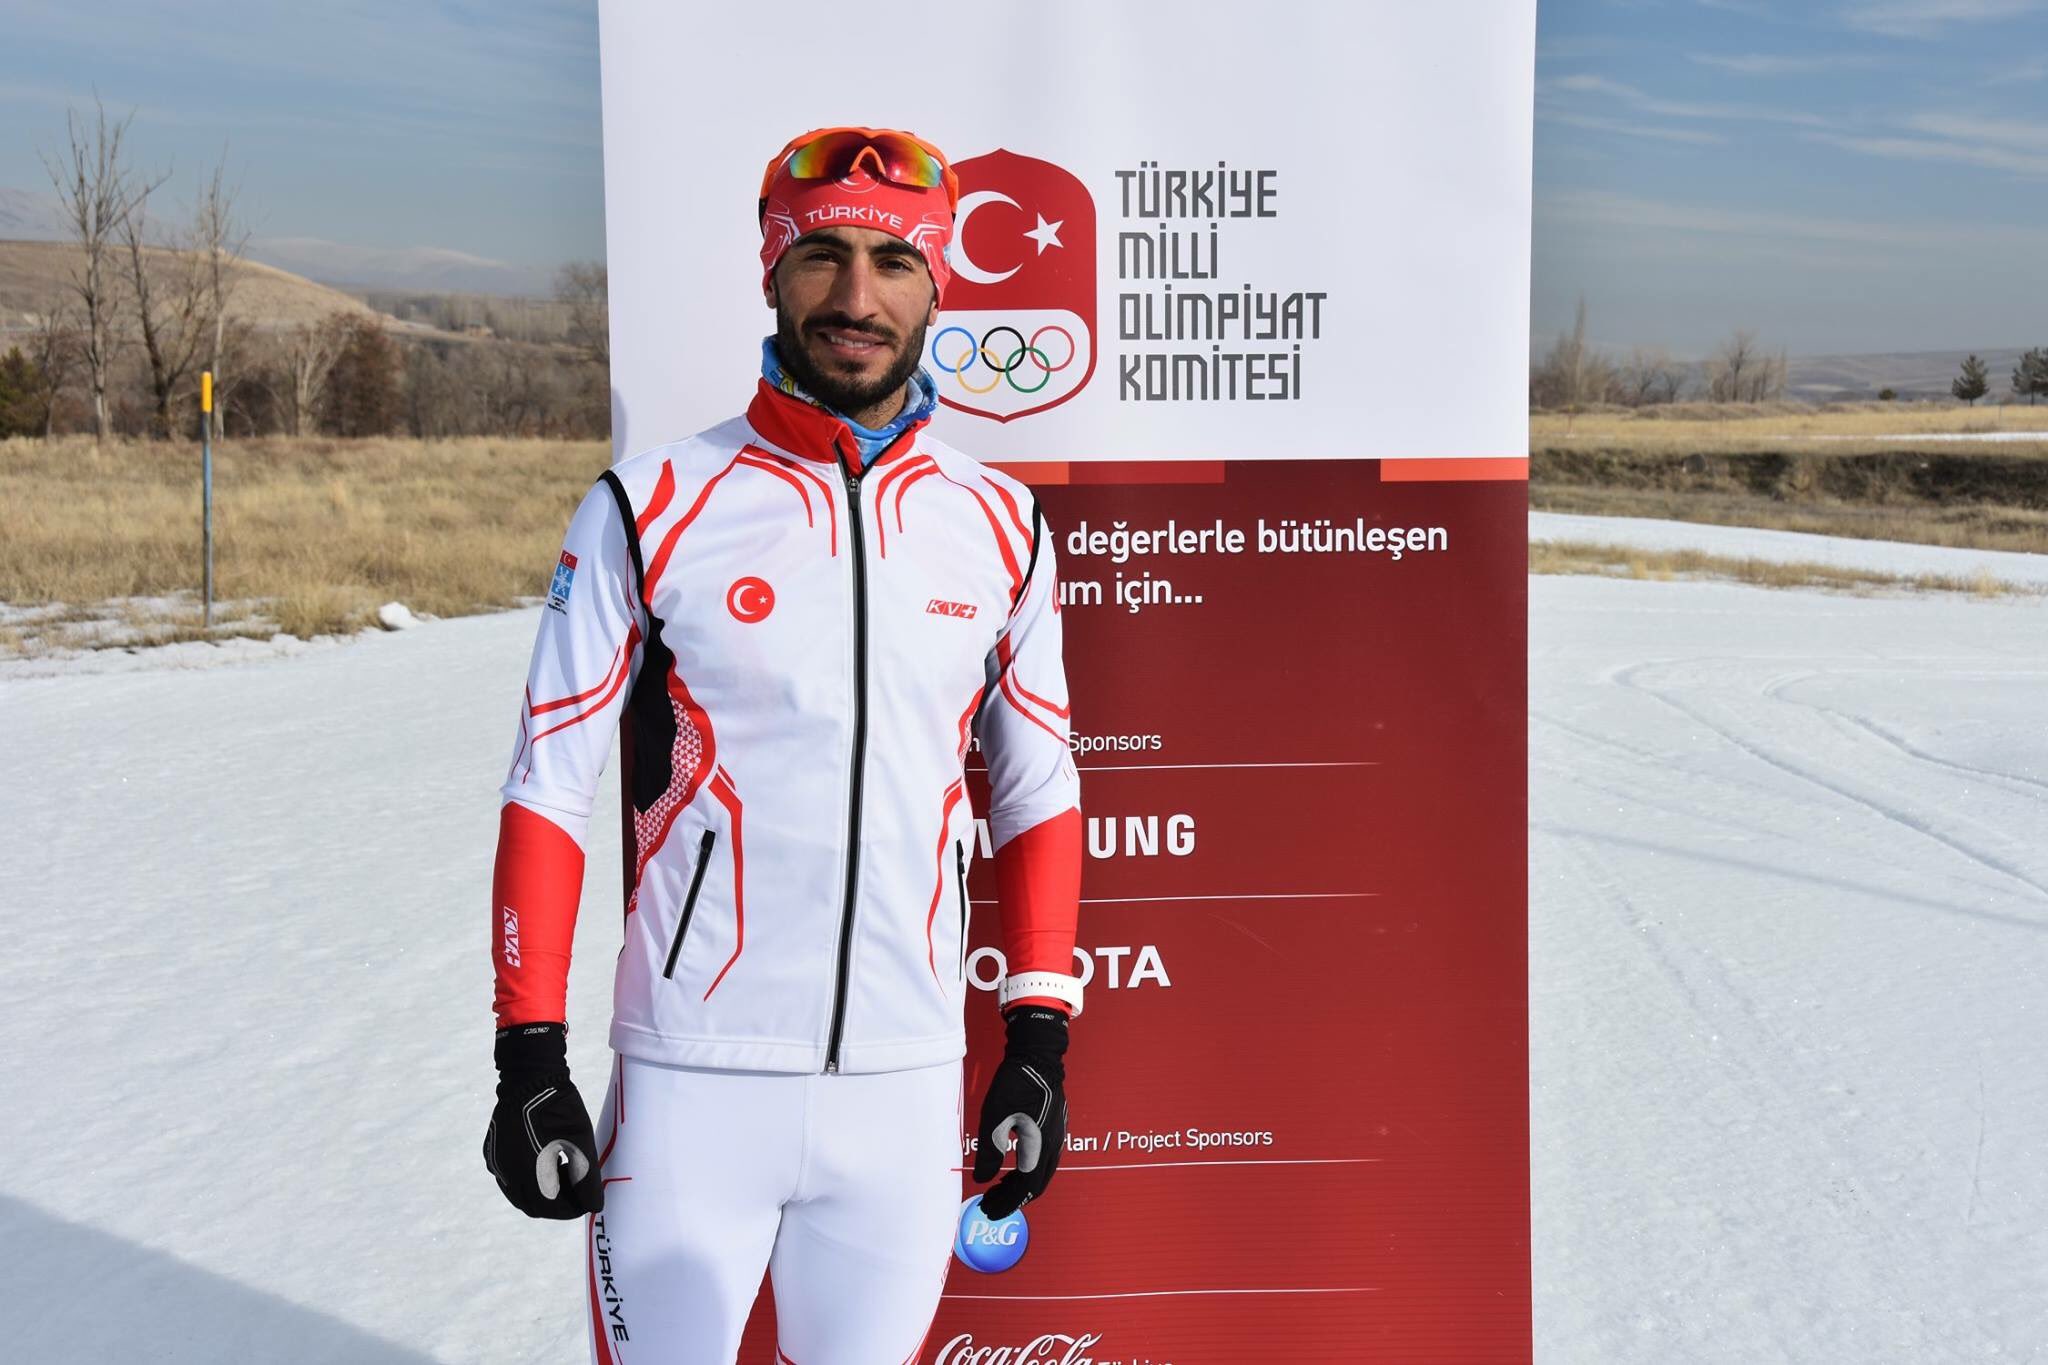 TMOK | #TeamTürkiye 🇹🇷 on X: "Kayaklı Koşu milli sporcularımız Hamza  Dursun, Ömer Ayçiçek ve Ayşenur Duman, #PyeongChang2018'de ülkemizi temsil  edecek ⛷❄️ https://t.co/3KJR4DV3Tv https://t.co/JNGGopwhhl" / X